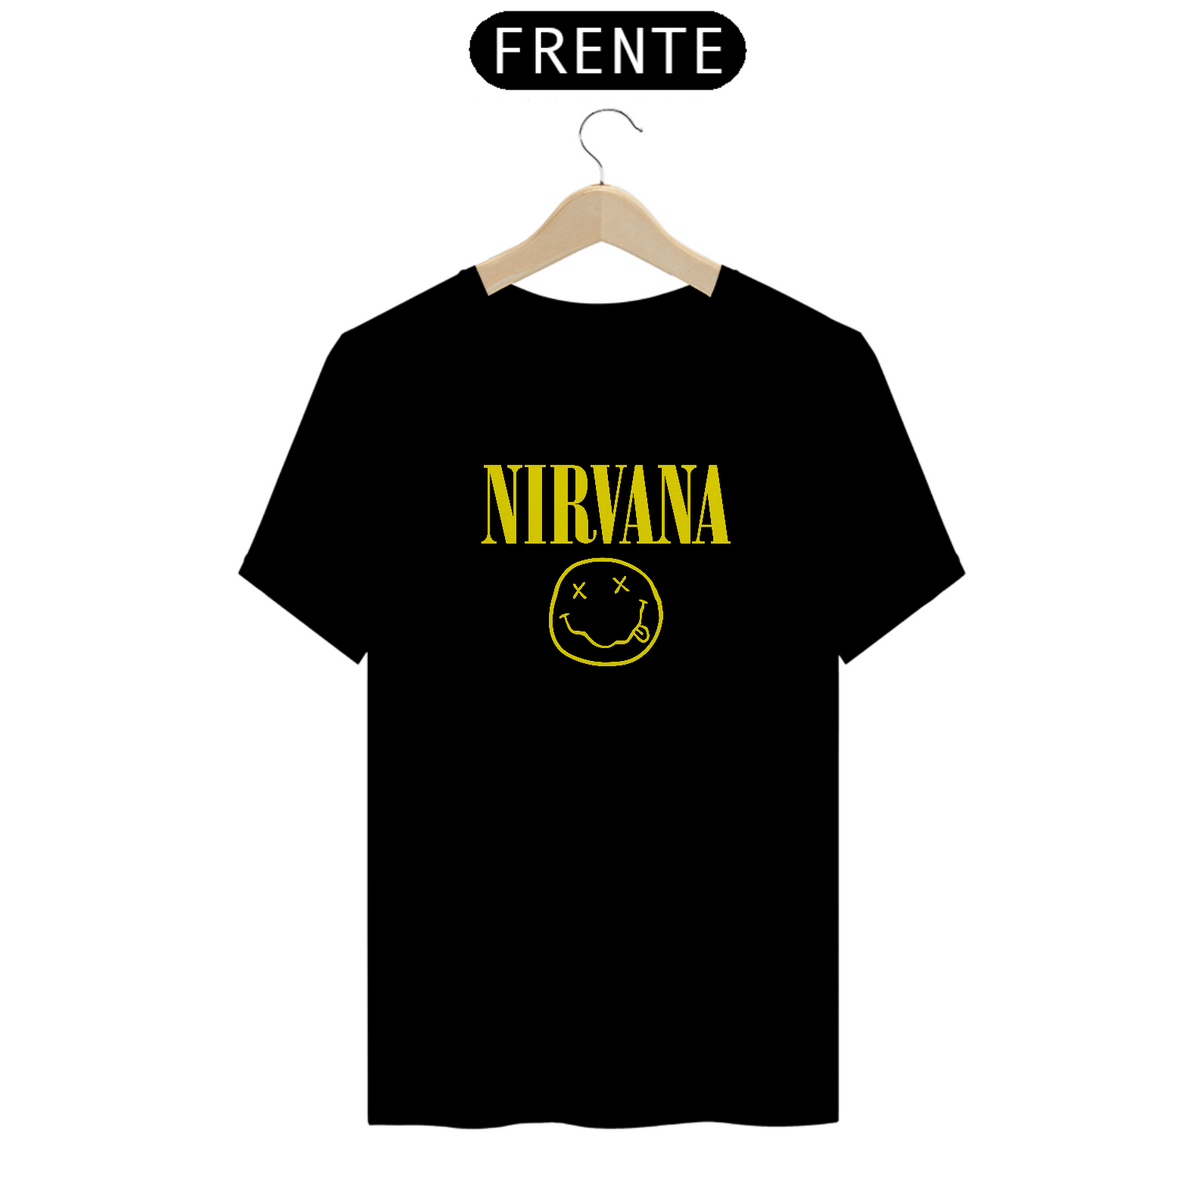 Nome do produto: Camiseta Nirvana Smile